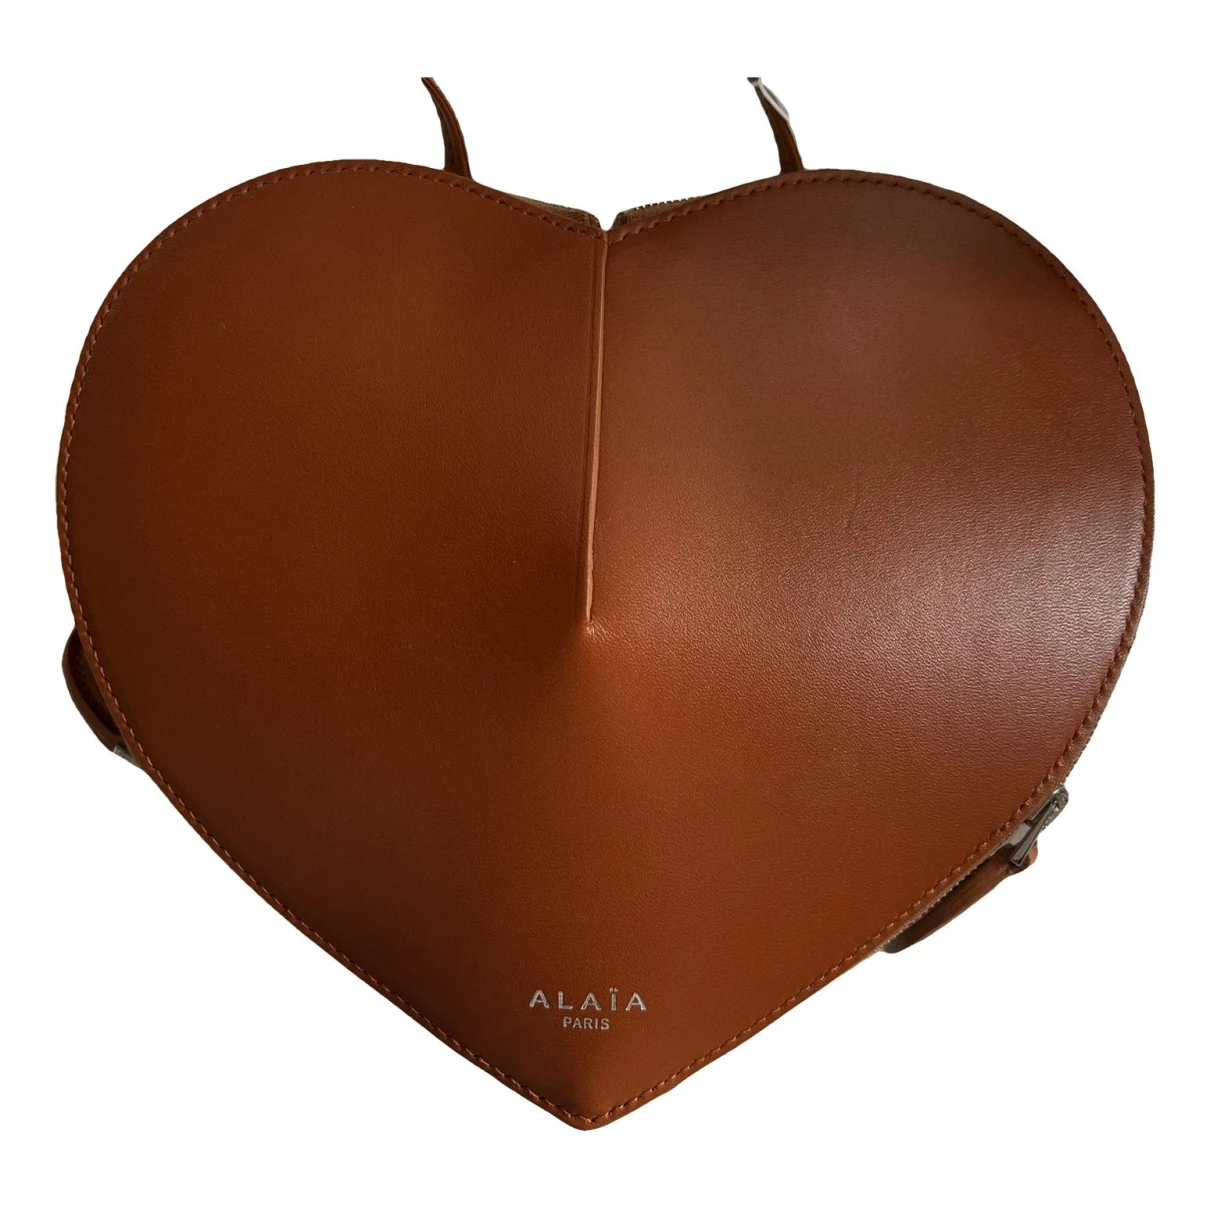 Pre-owned Alaïa Le Coeur Leather Handbag In Brown